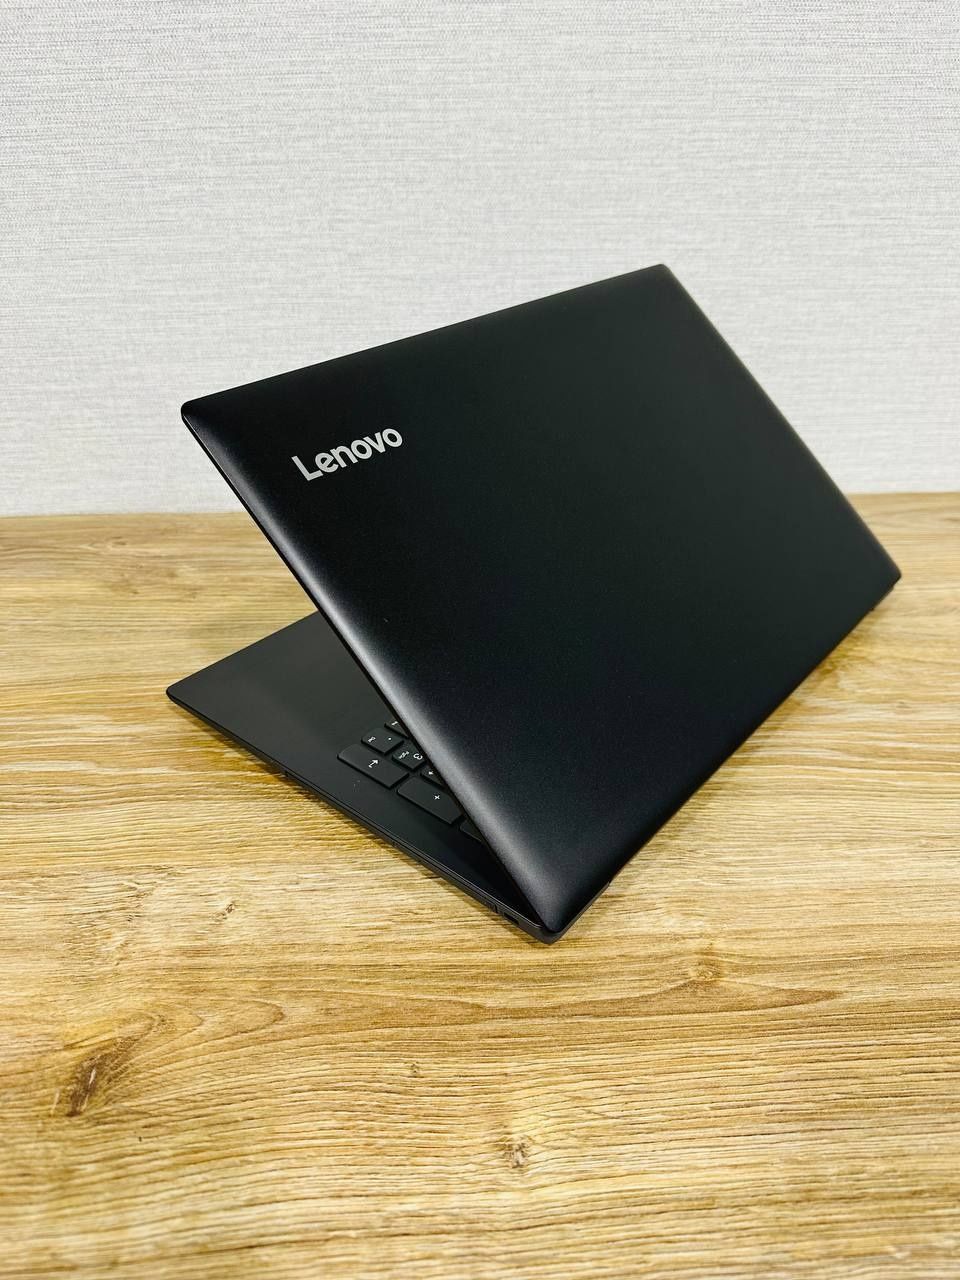 Lenovo IdeaPad 320